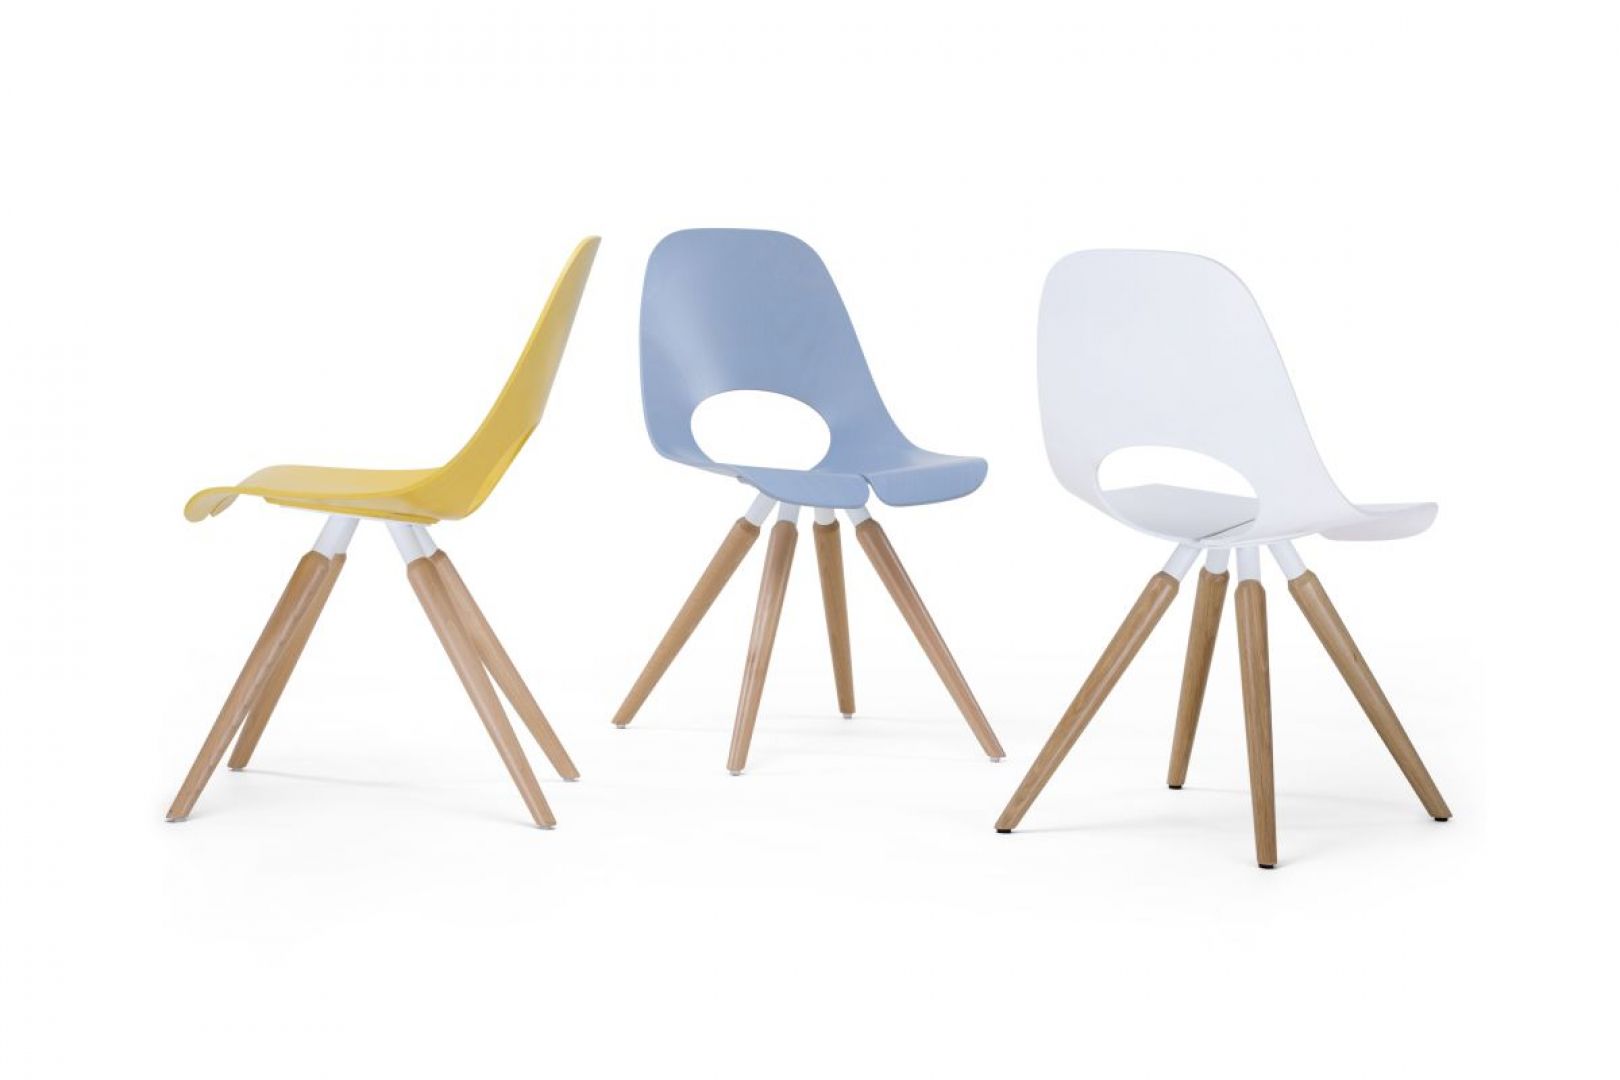 Krzesła z kolekcji Tauko zostały zaprojektowane przez Przemysława Mac Stopę dla Grupy Nowy Styl. Fot. Grupa Nowy Styl